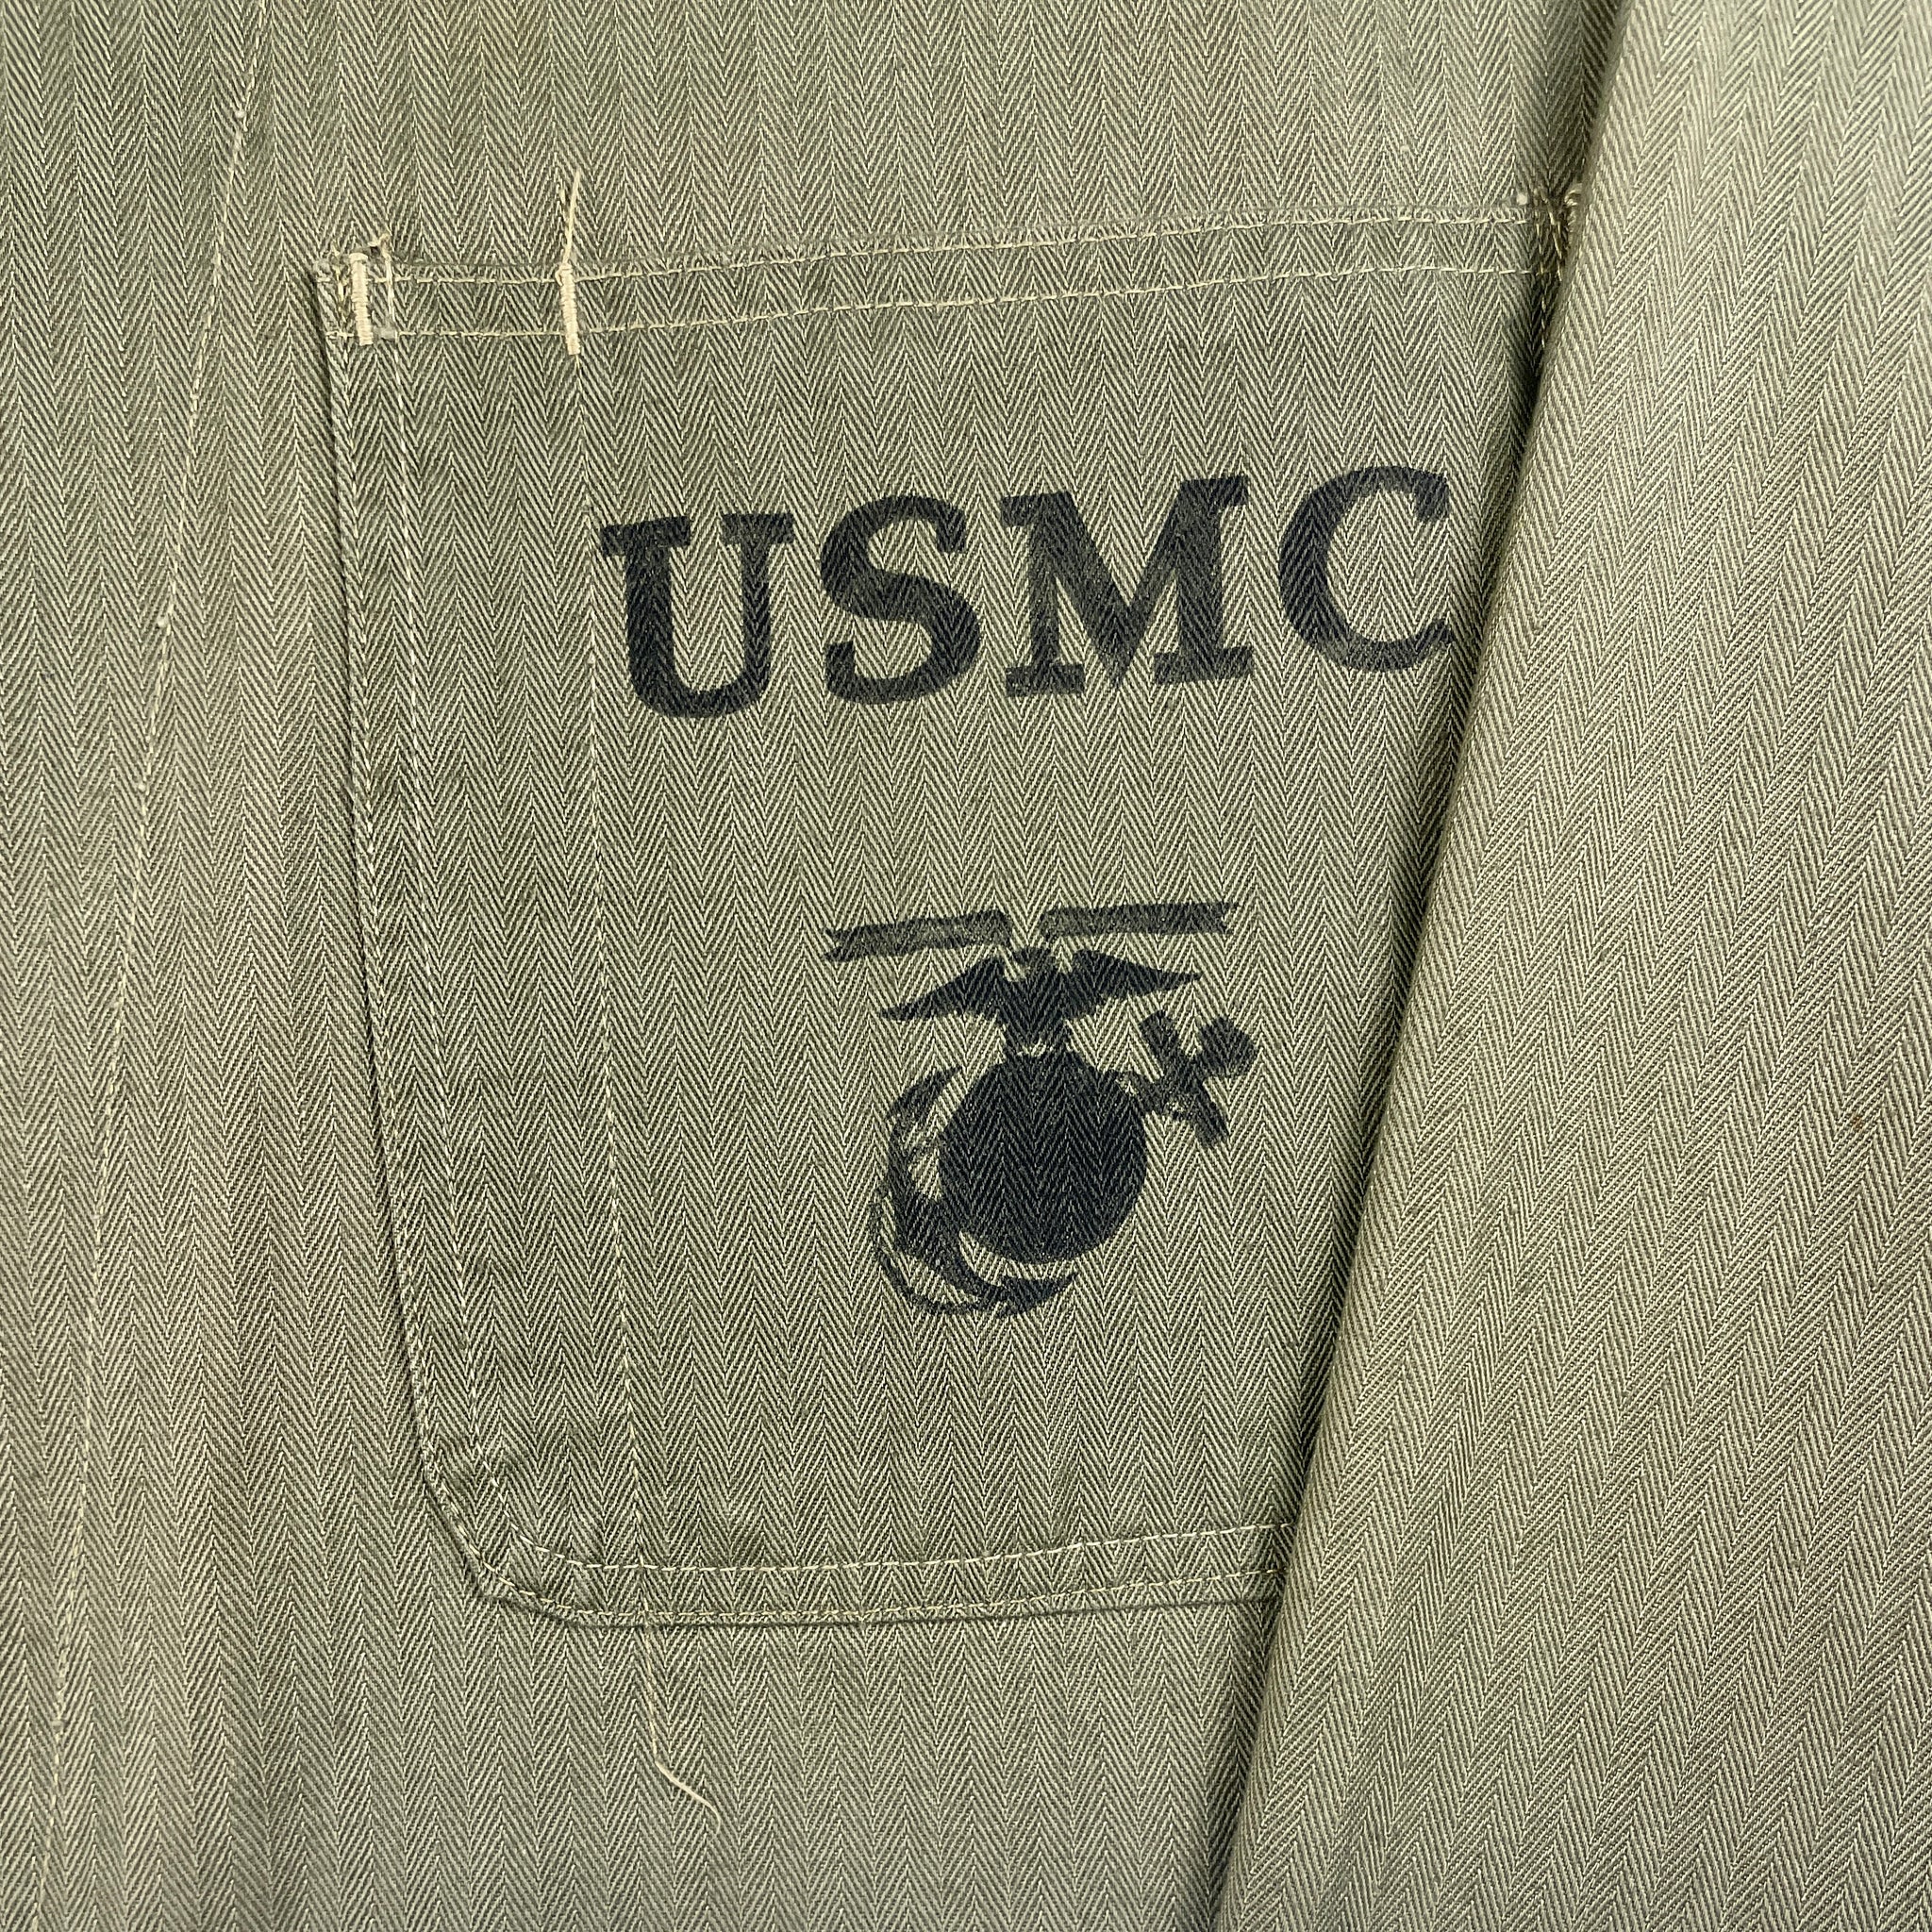 Mint Condition USMC P41 HBT Fatigue Shirt – The Major's Tailor